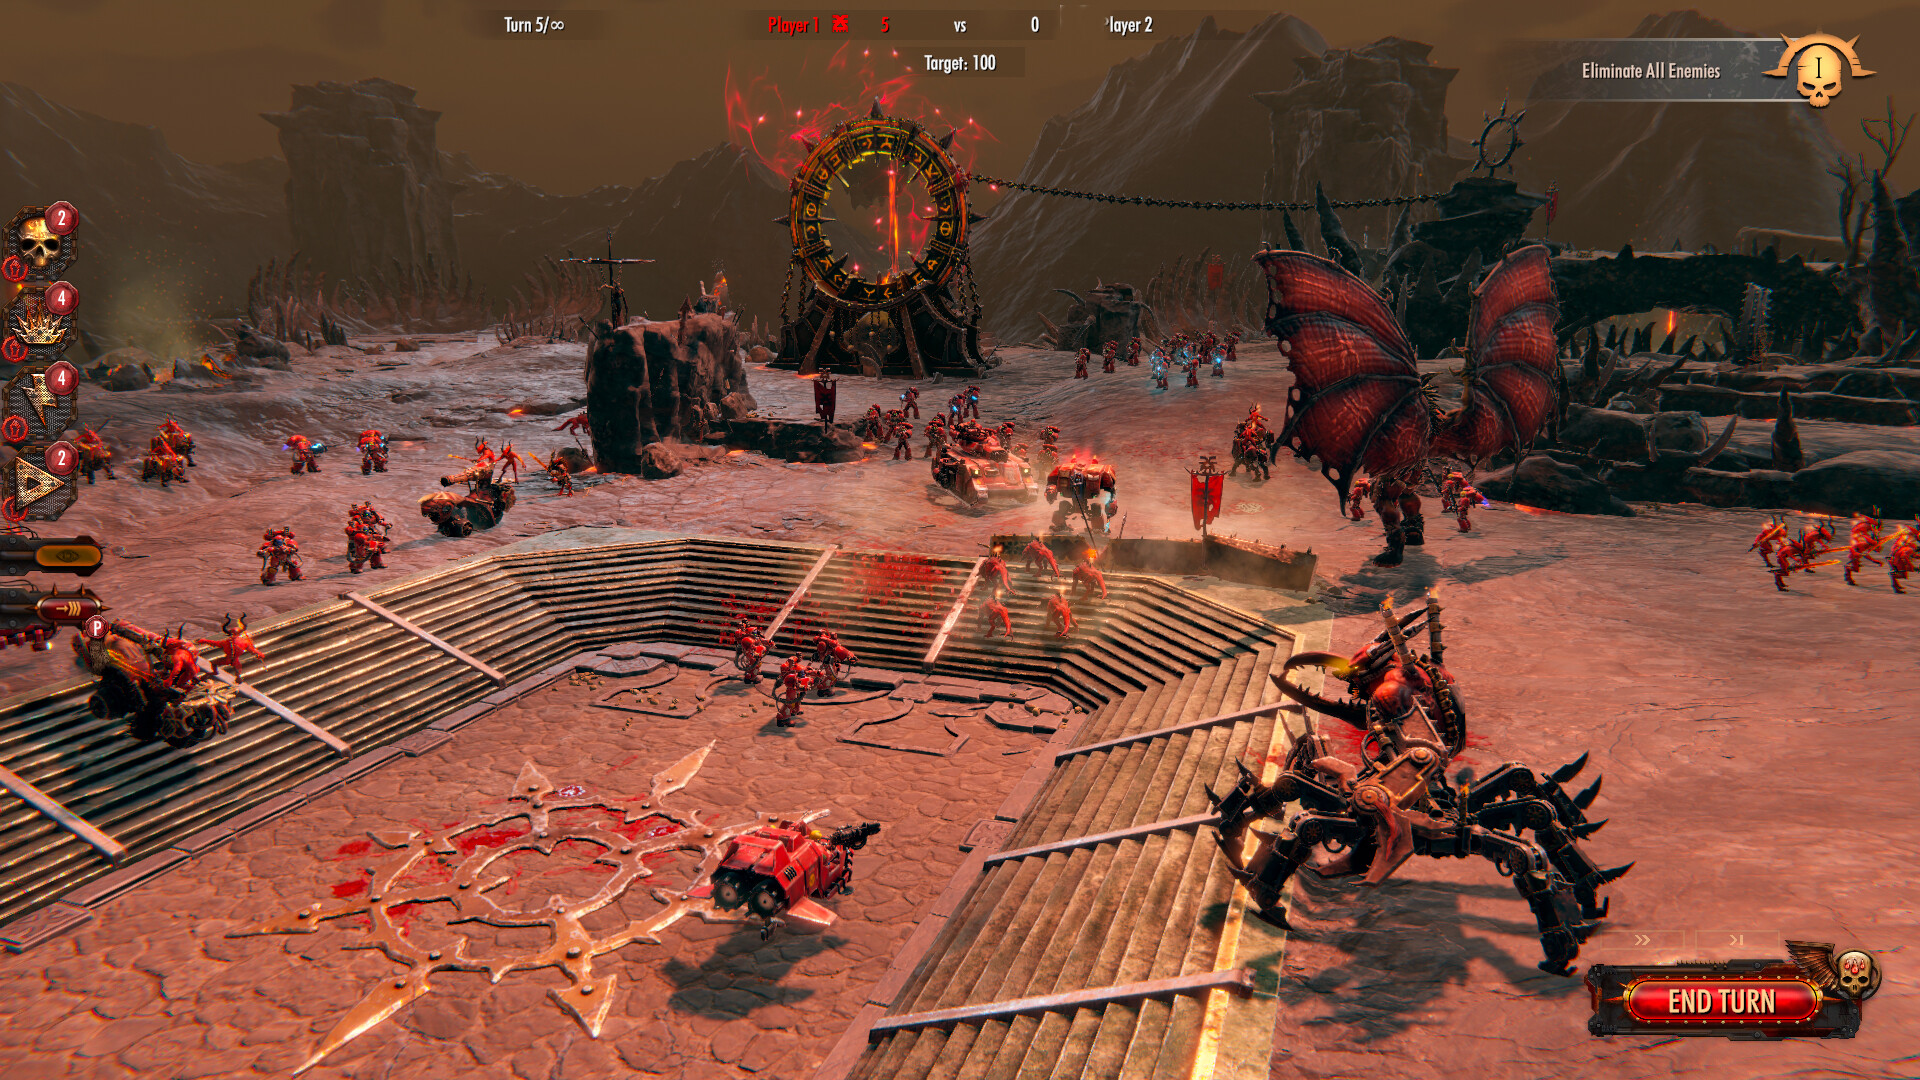 Warhammer 40,000: Battlesector - Daemons of Khorne DLC Steam CD Key 3.71 usd